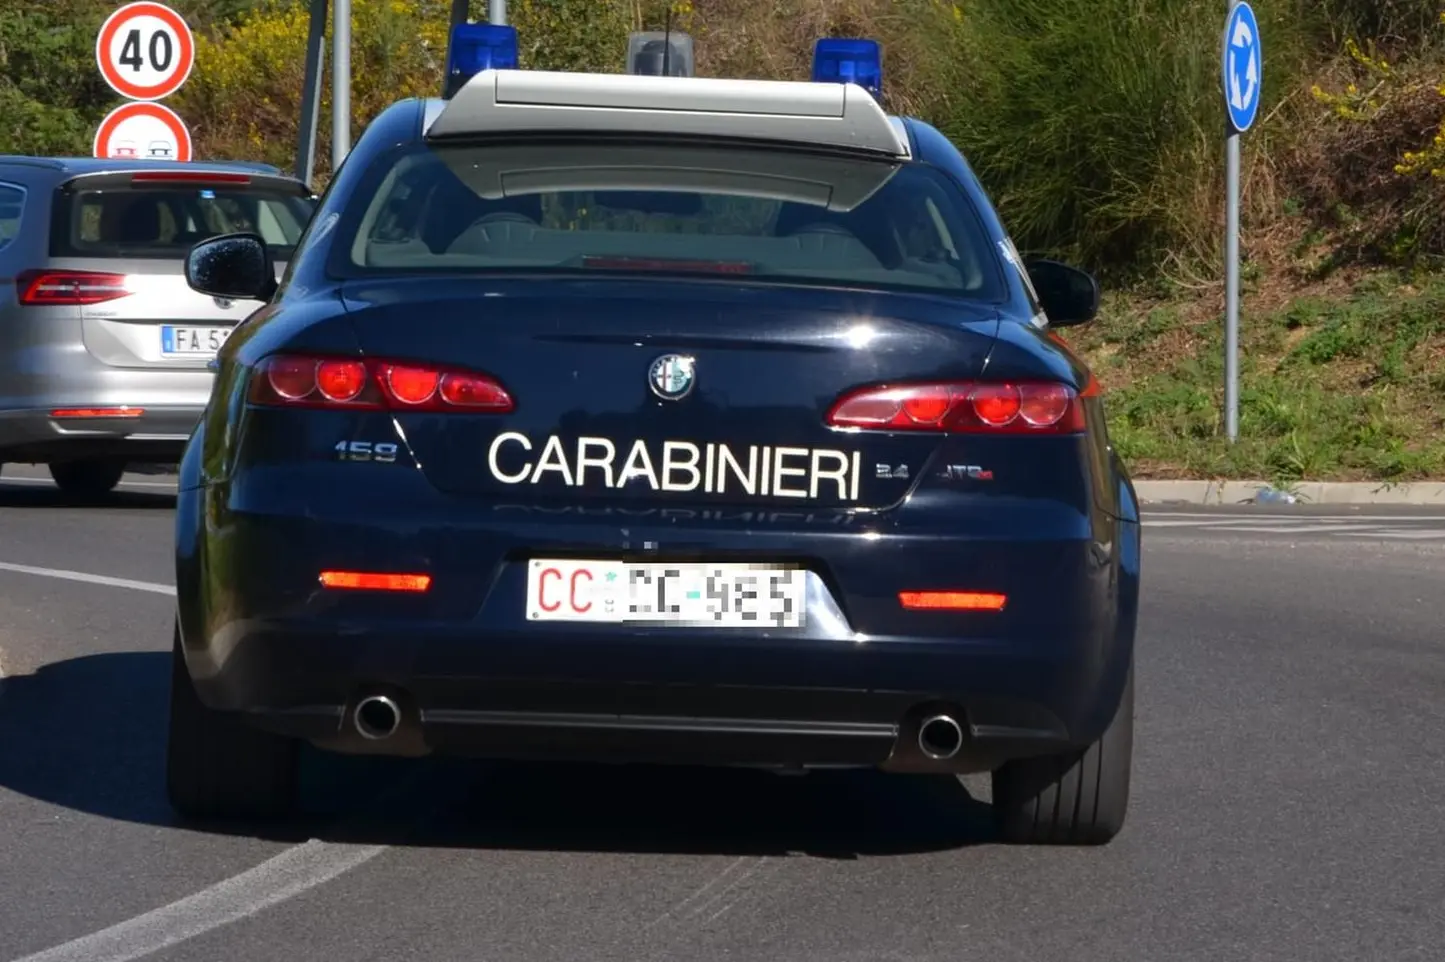 Un'auto dei carabinieri (Archivio L'Unione Sarda)